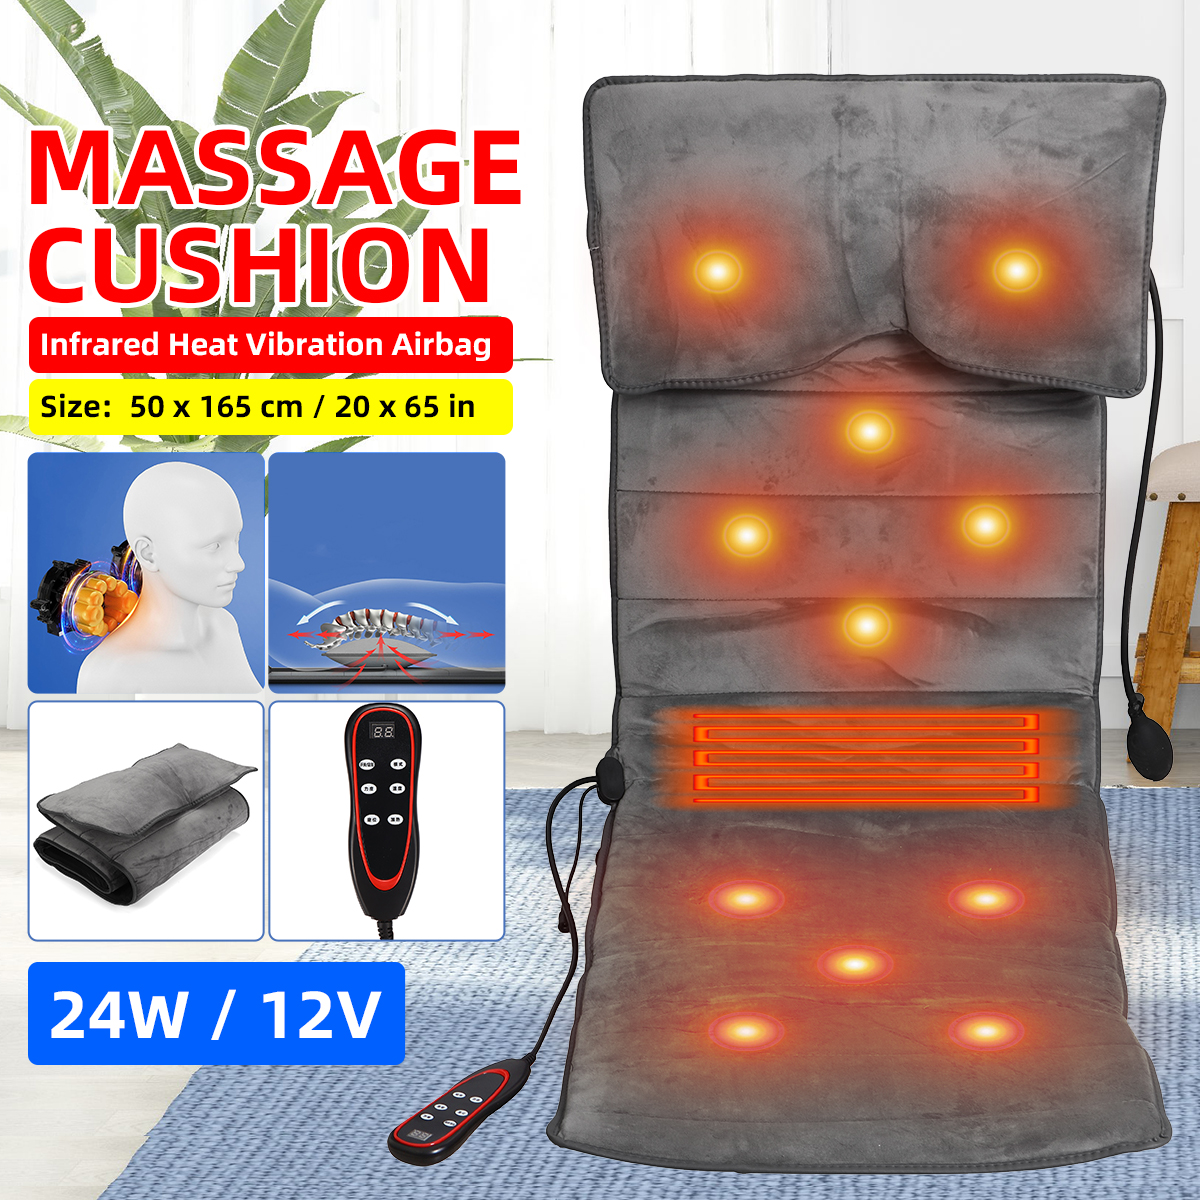 9-Gears-Adjust-Electric-Vibrator-Heating-Back-Neck-Massager-Mattress-Leg-Waist-Cushion-Mat-Home-Offi-1780810-2